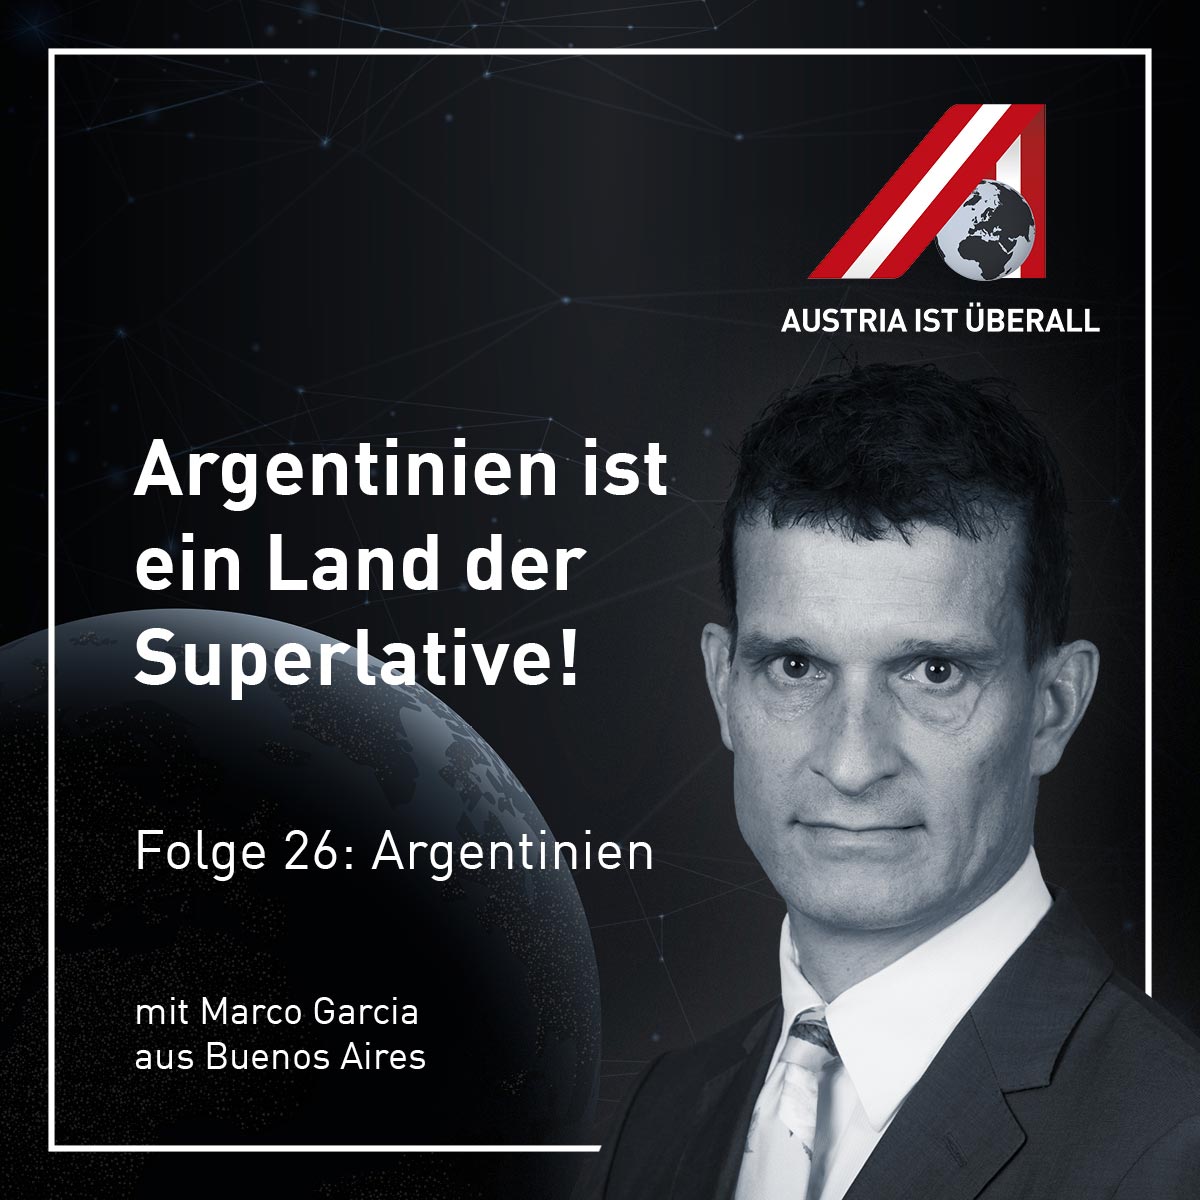 Austria ist überall Folge 26 Argentinien